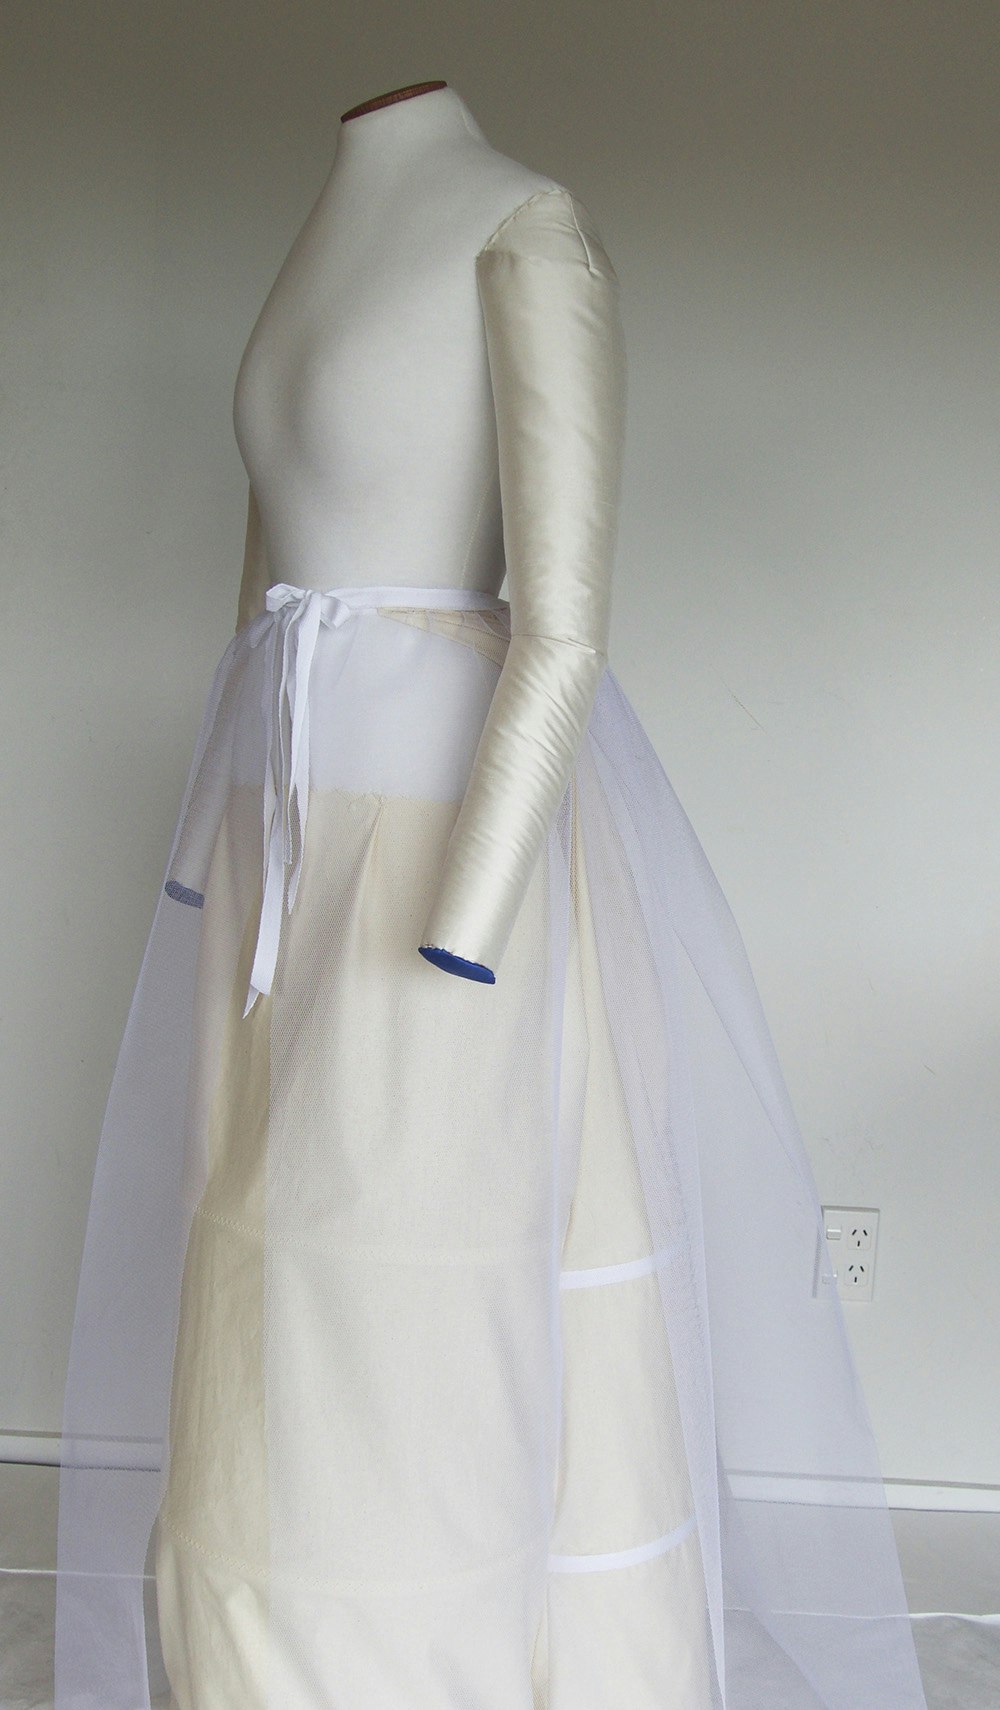 A white gauze skirt over a white dressmaker's model